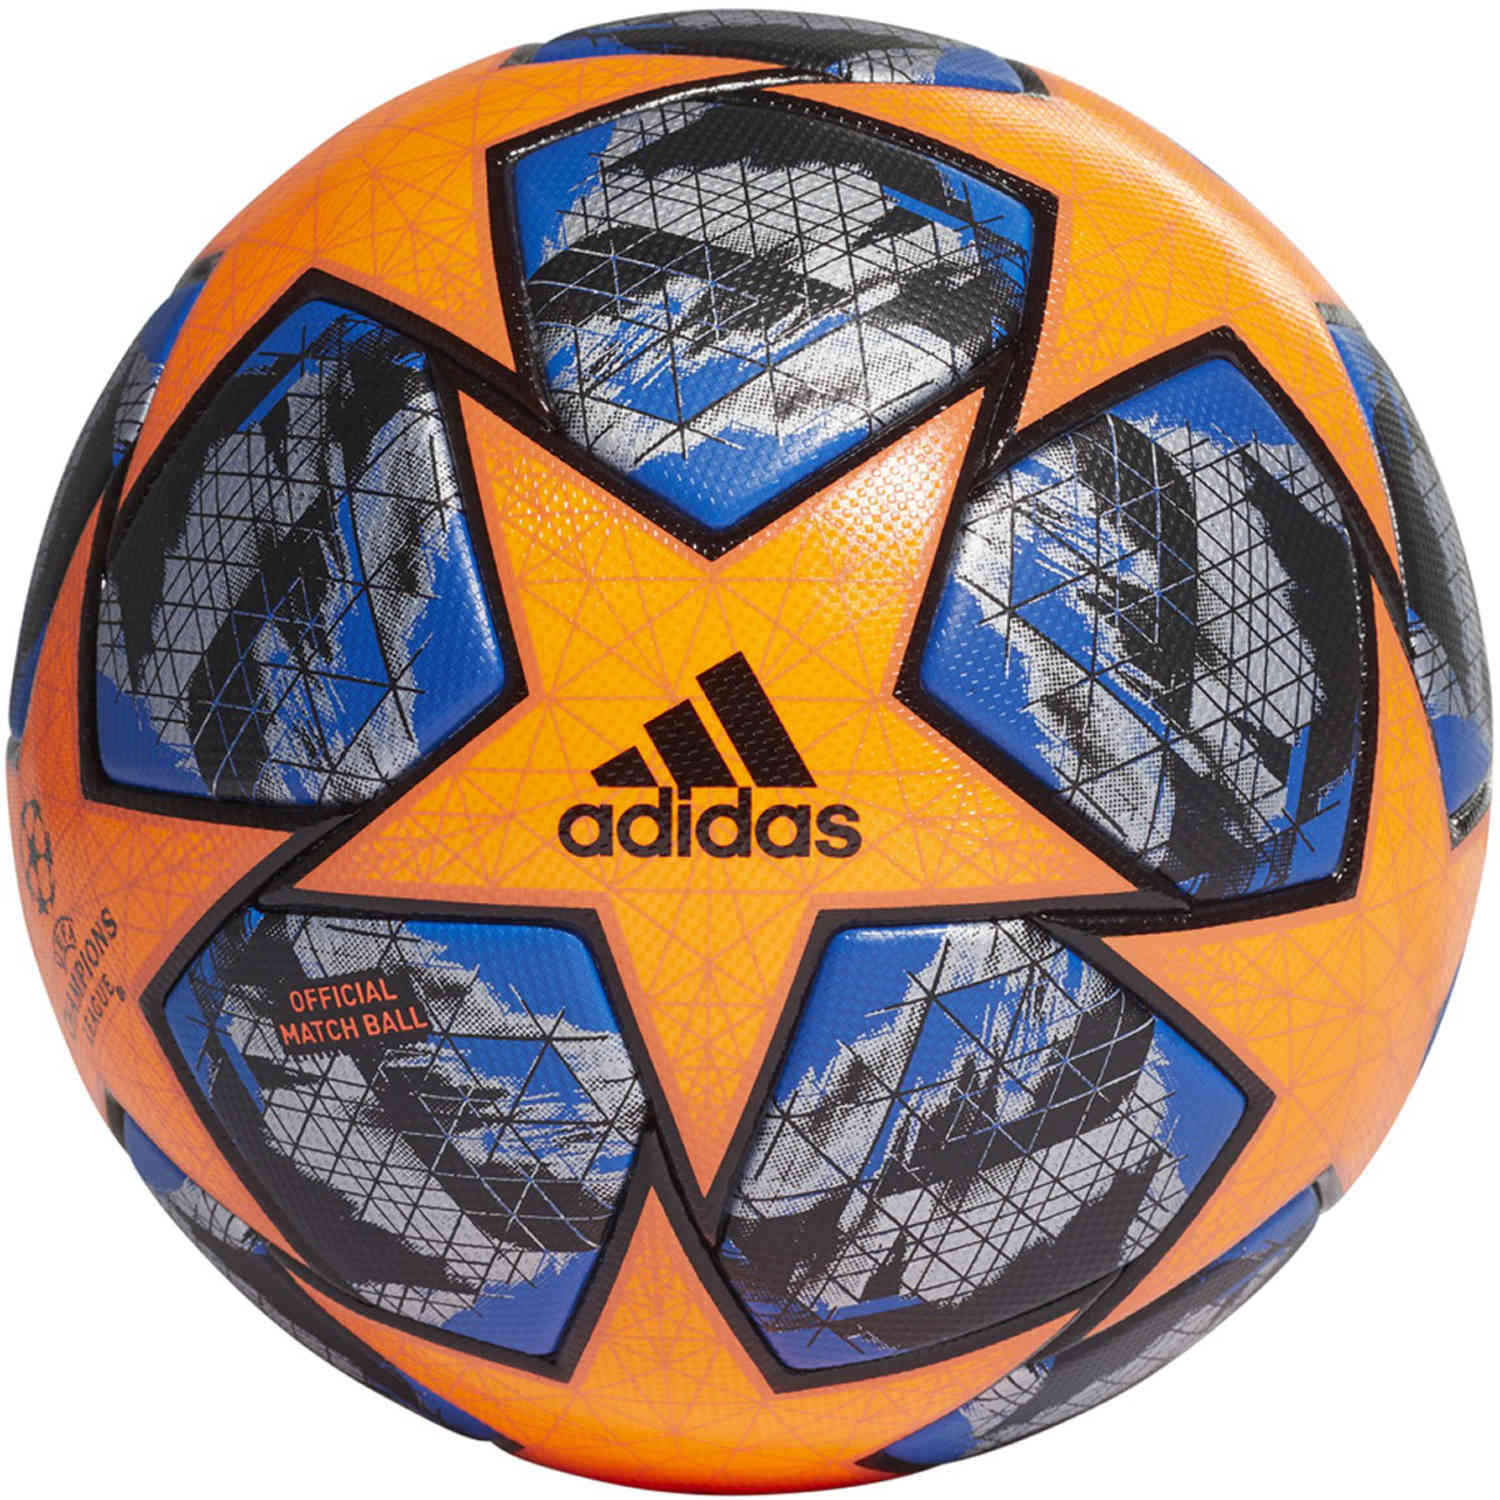 adidas official match balls